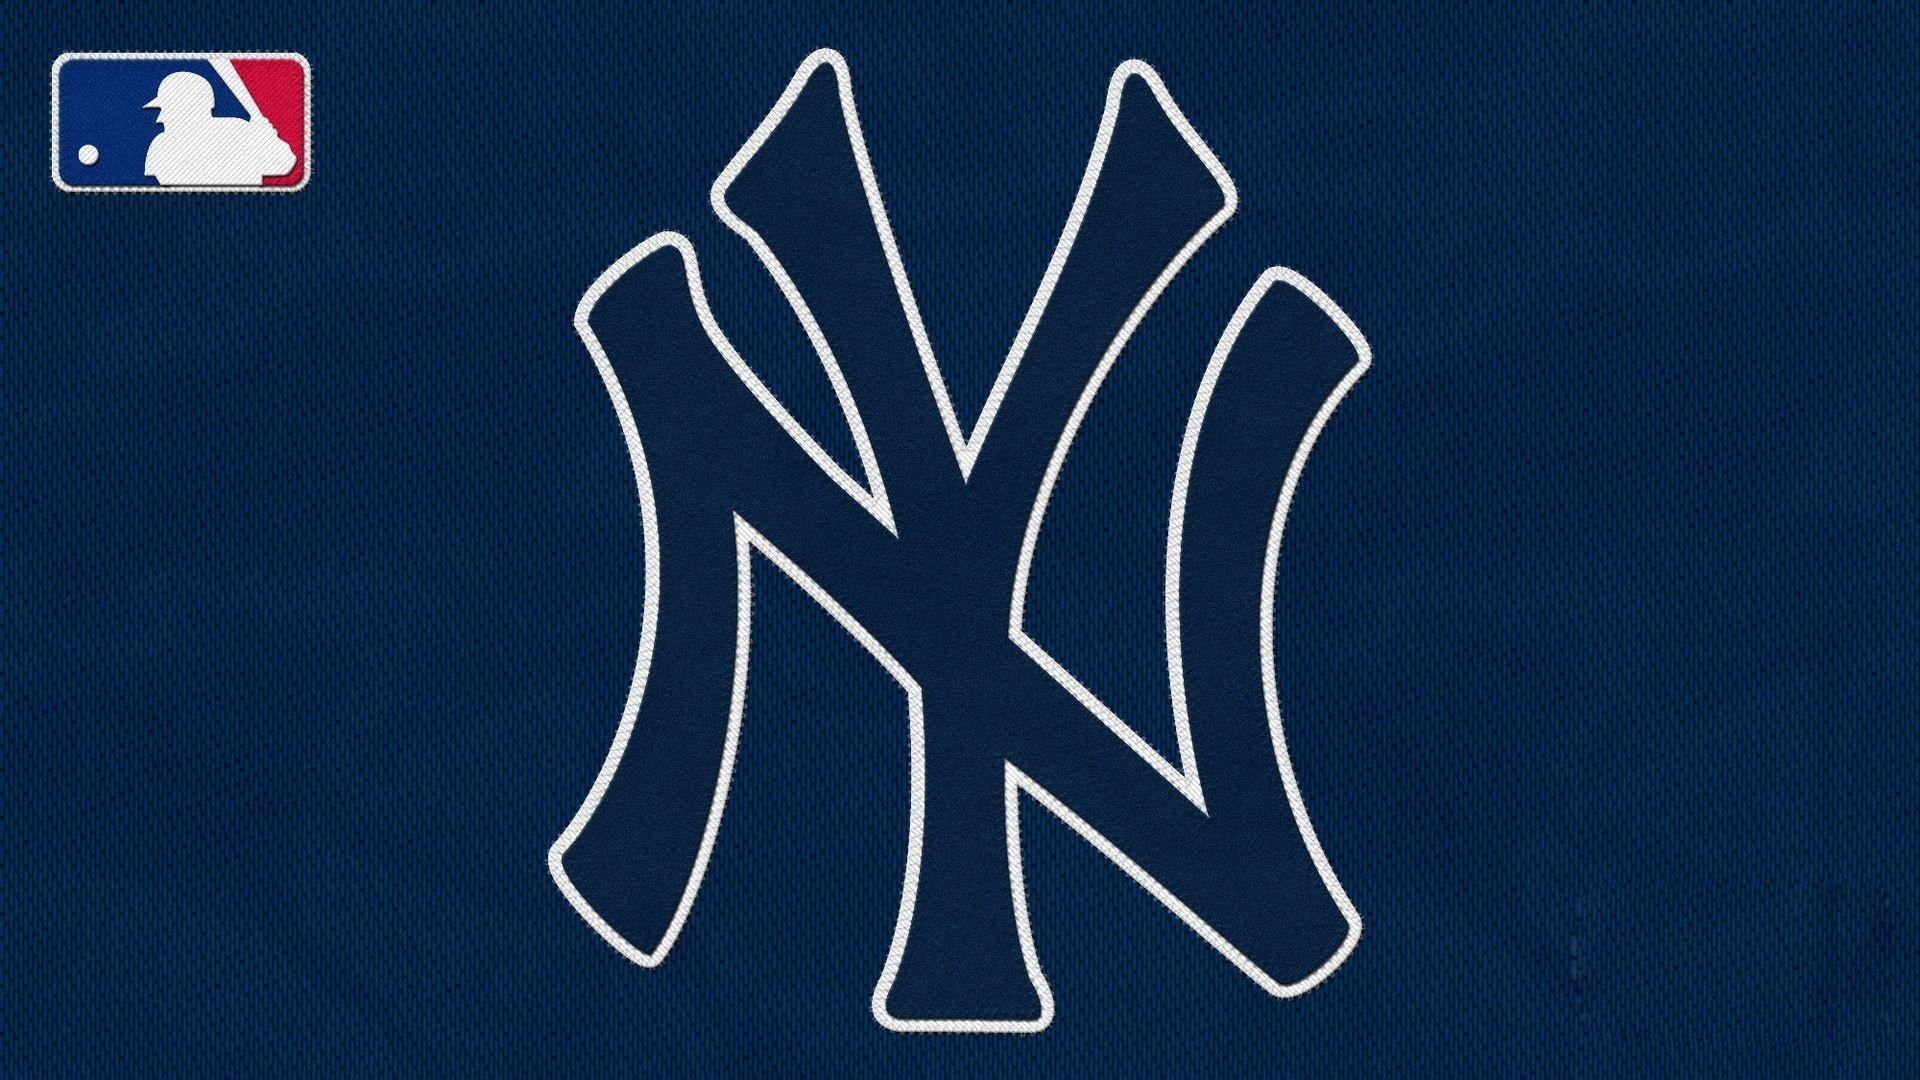 New York Yankees 2019 Wallpapers - Wallpaper Cave